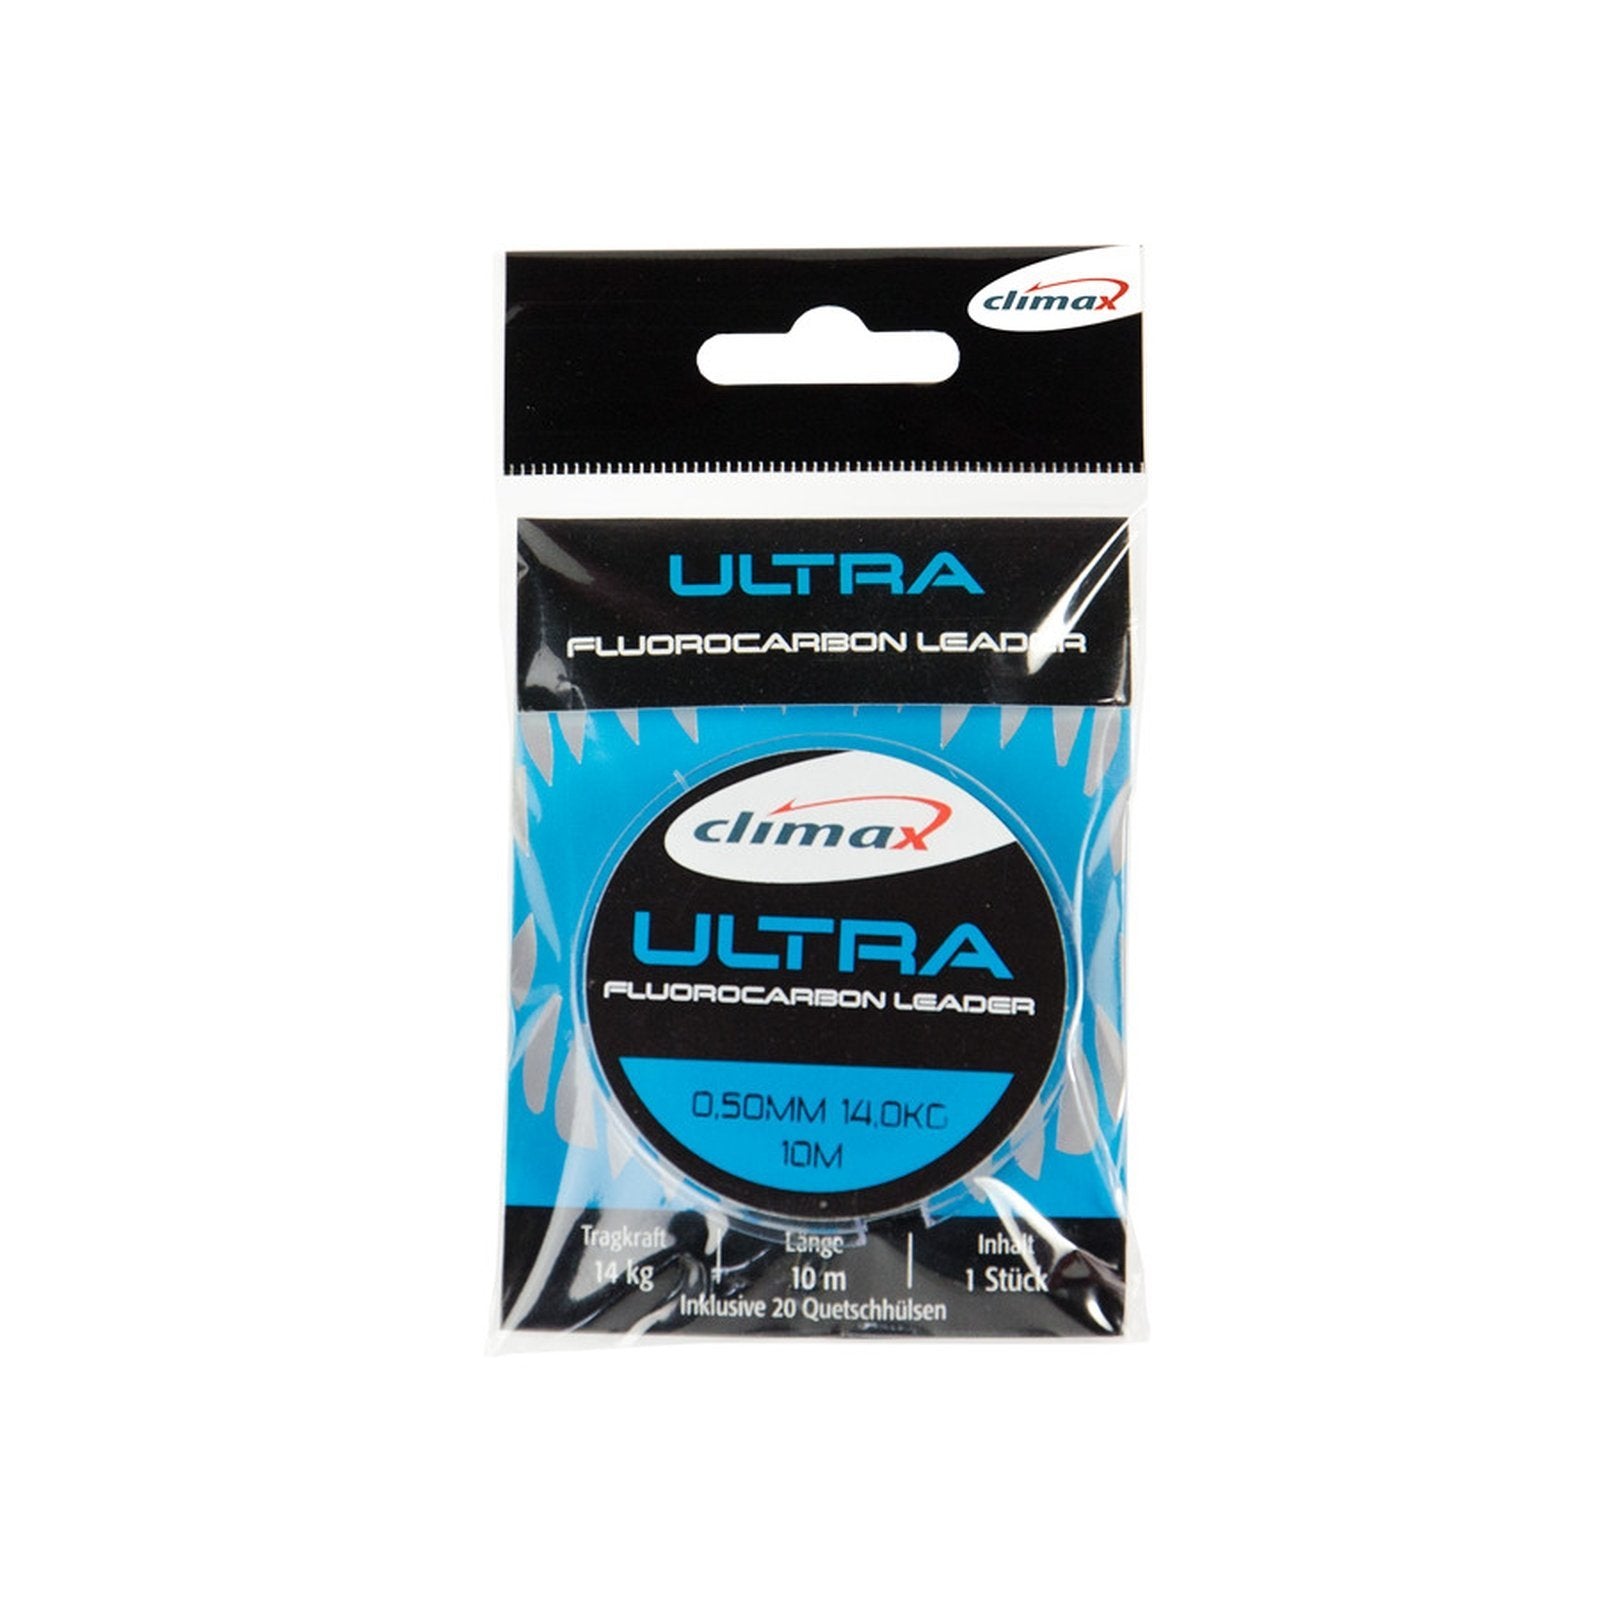 Climax Ultra Fluorocarbon Leader Schnur 1